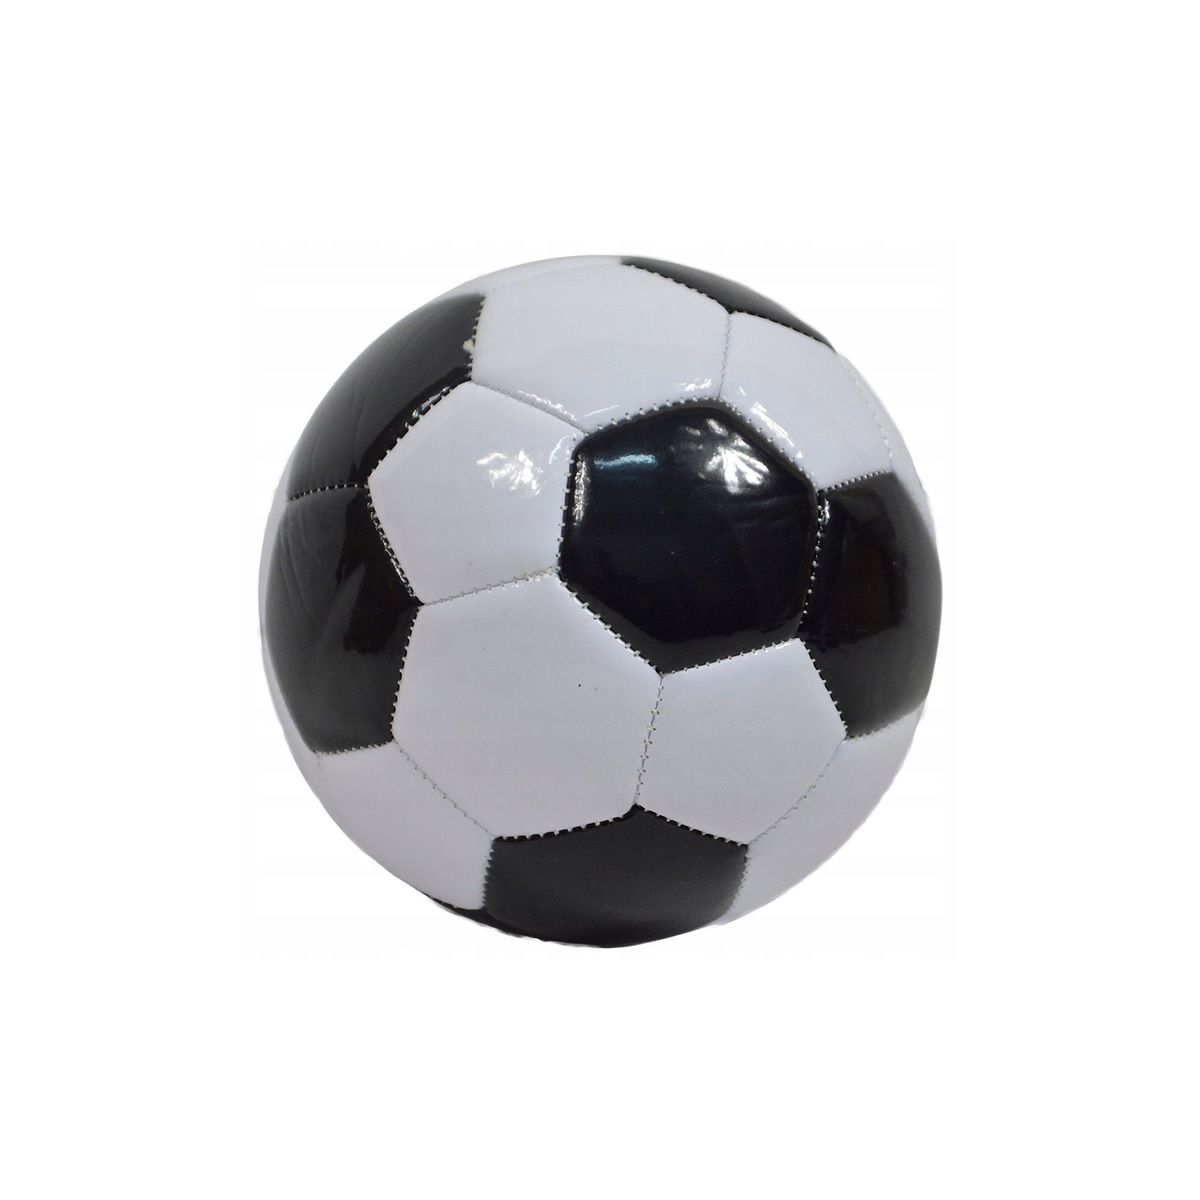 Piłka nożna mini 15cm Dromader (130-02481)